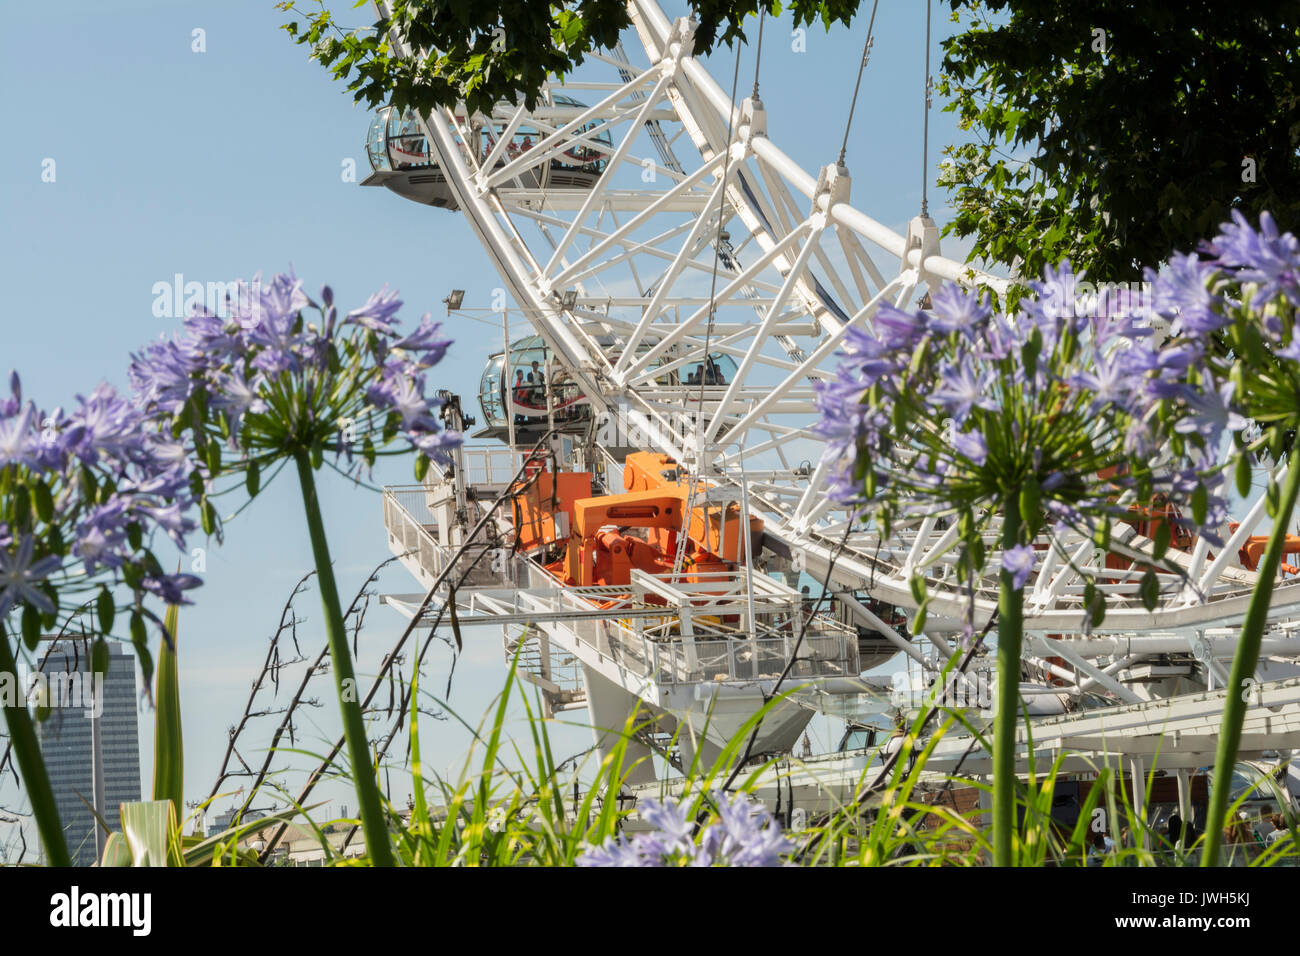 Das London Eye - Riesenrad am Südufer der Themse in London, Großbritannien Stockfoto